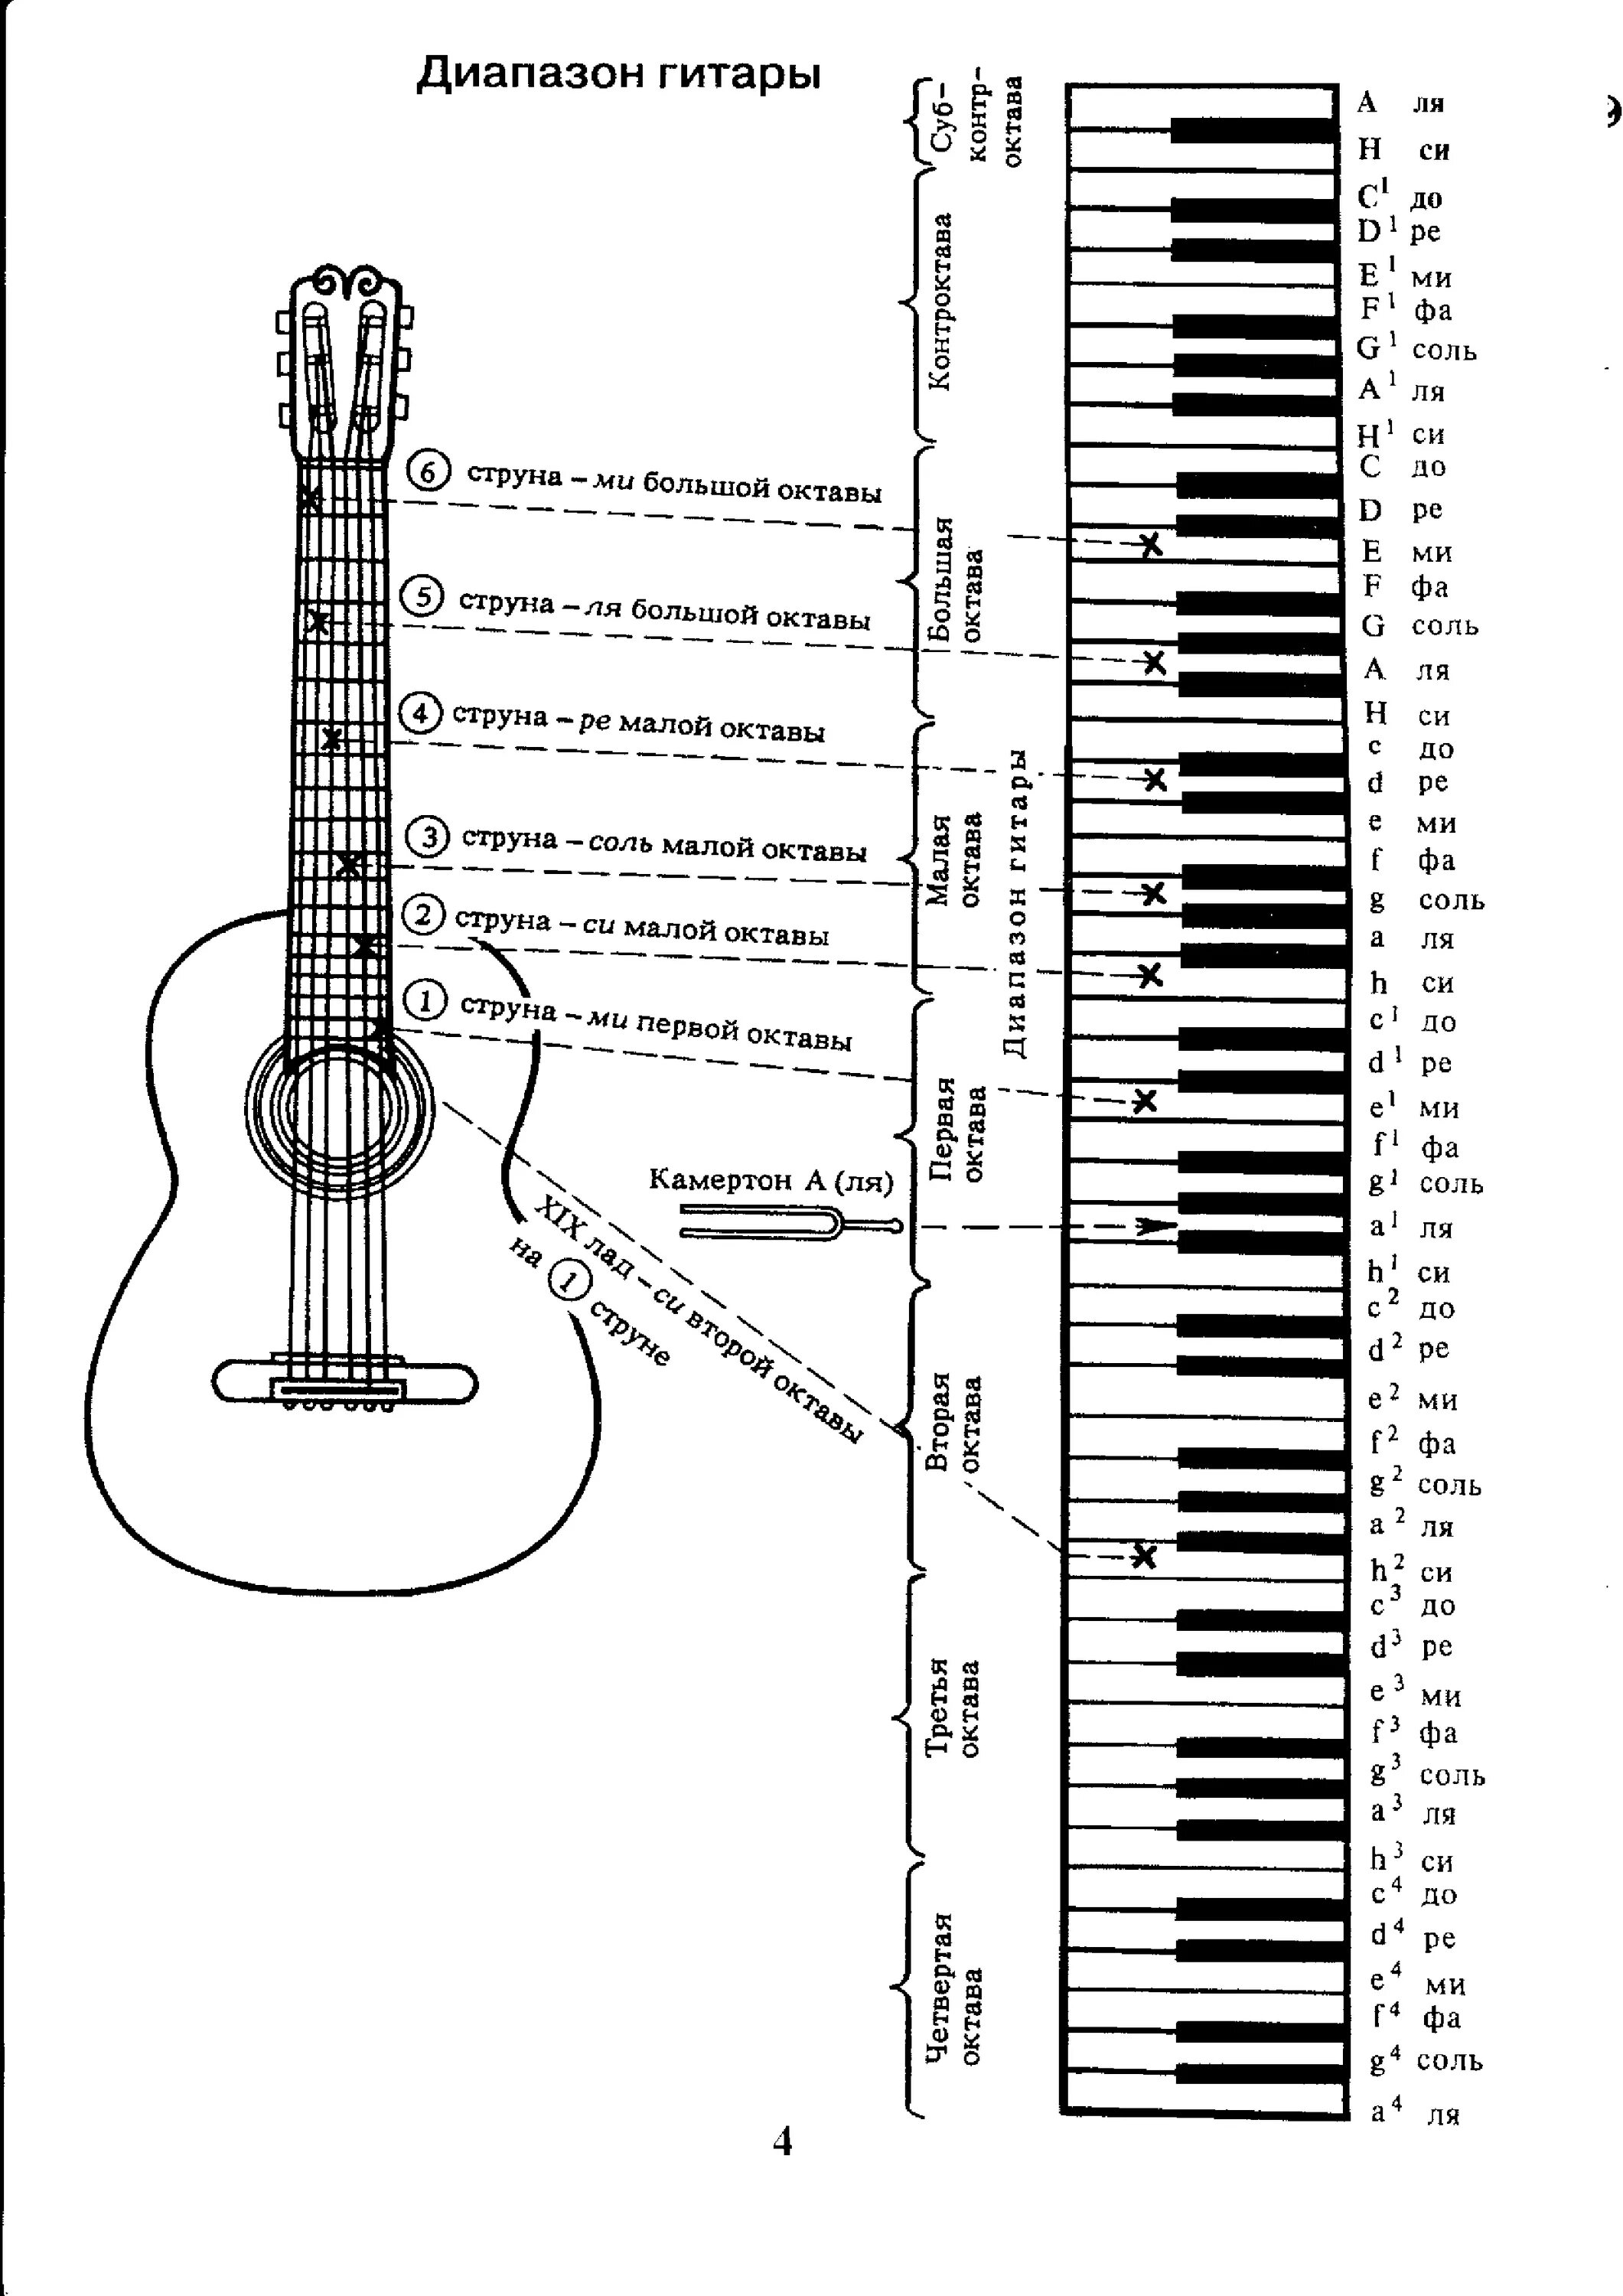 Аппликатура аккордов для гитары 6 струн для начинающих. Ноты на гитарном грифе 6 струнной. Лады на 6 струнной гитаре для начинающих. Схема гитары классической 6 струнной. Звуки 6 струнной гитары